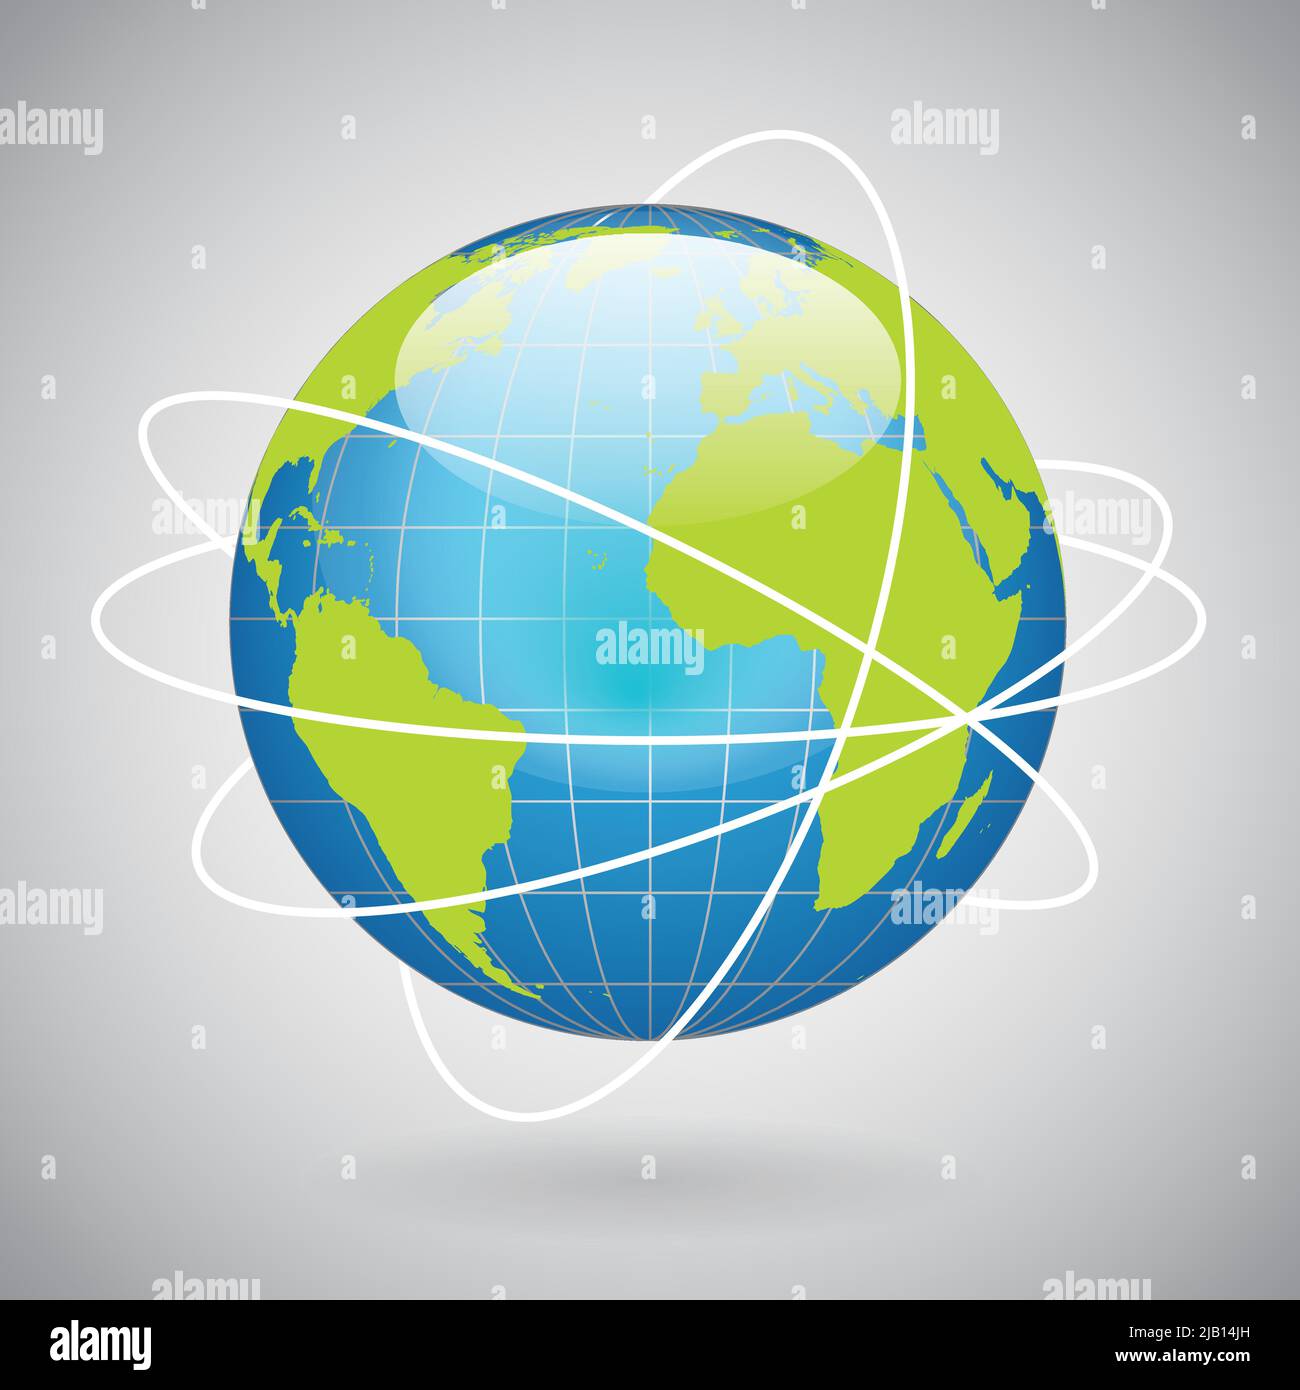 L'icône globe terrestre avec la technologie mondiale ou lien social network concept vector illustration Illustration de Vecteur